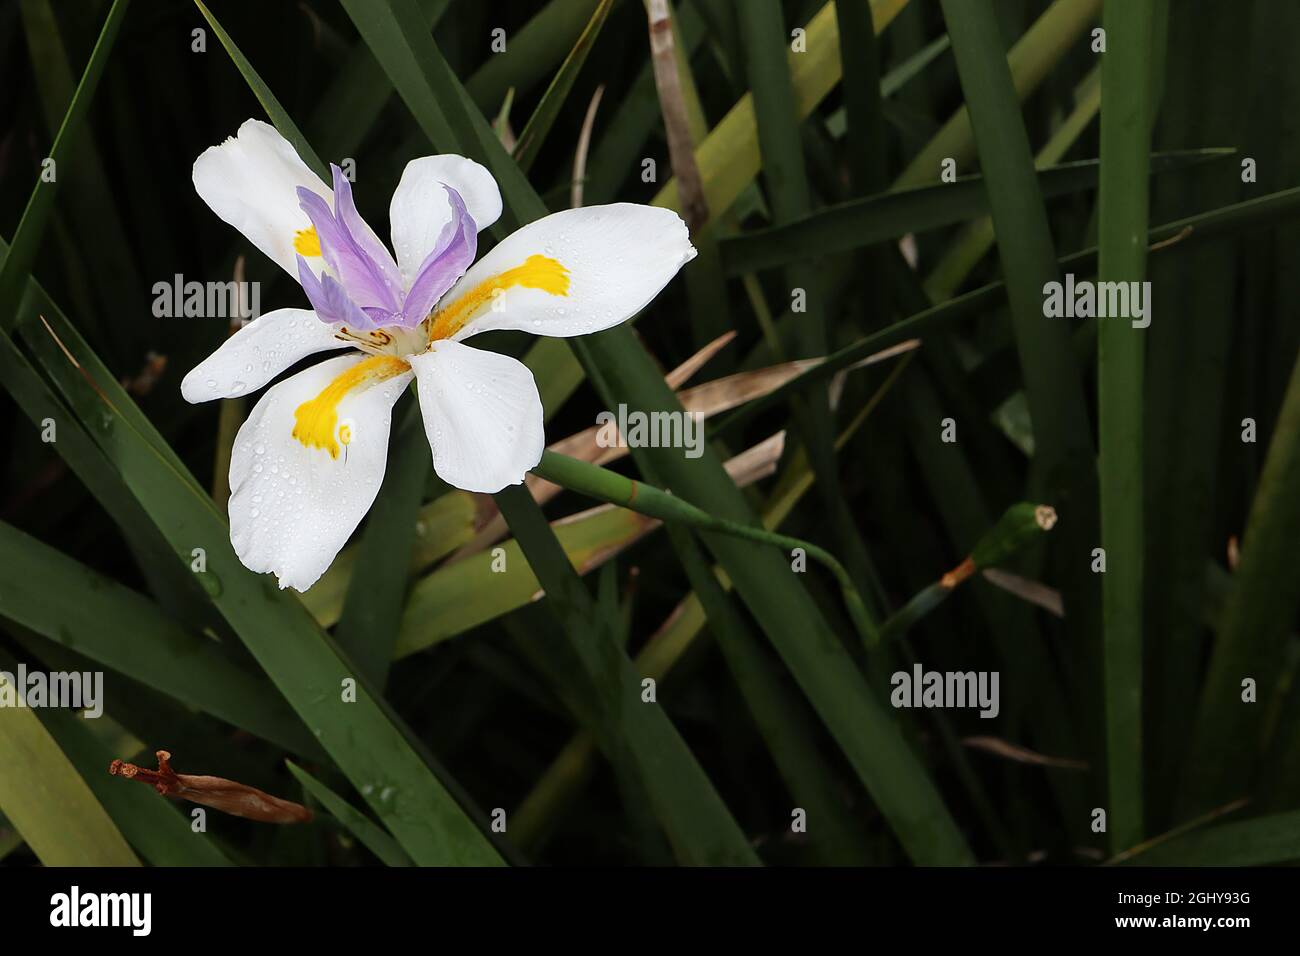 Dietes grandiflora “Reen Lelie” iride fata – cadute bianche con segni gialli e standard violacei corti, agosto, Inghilterra, Regno Unito Foto Stock